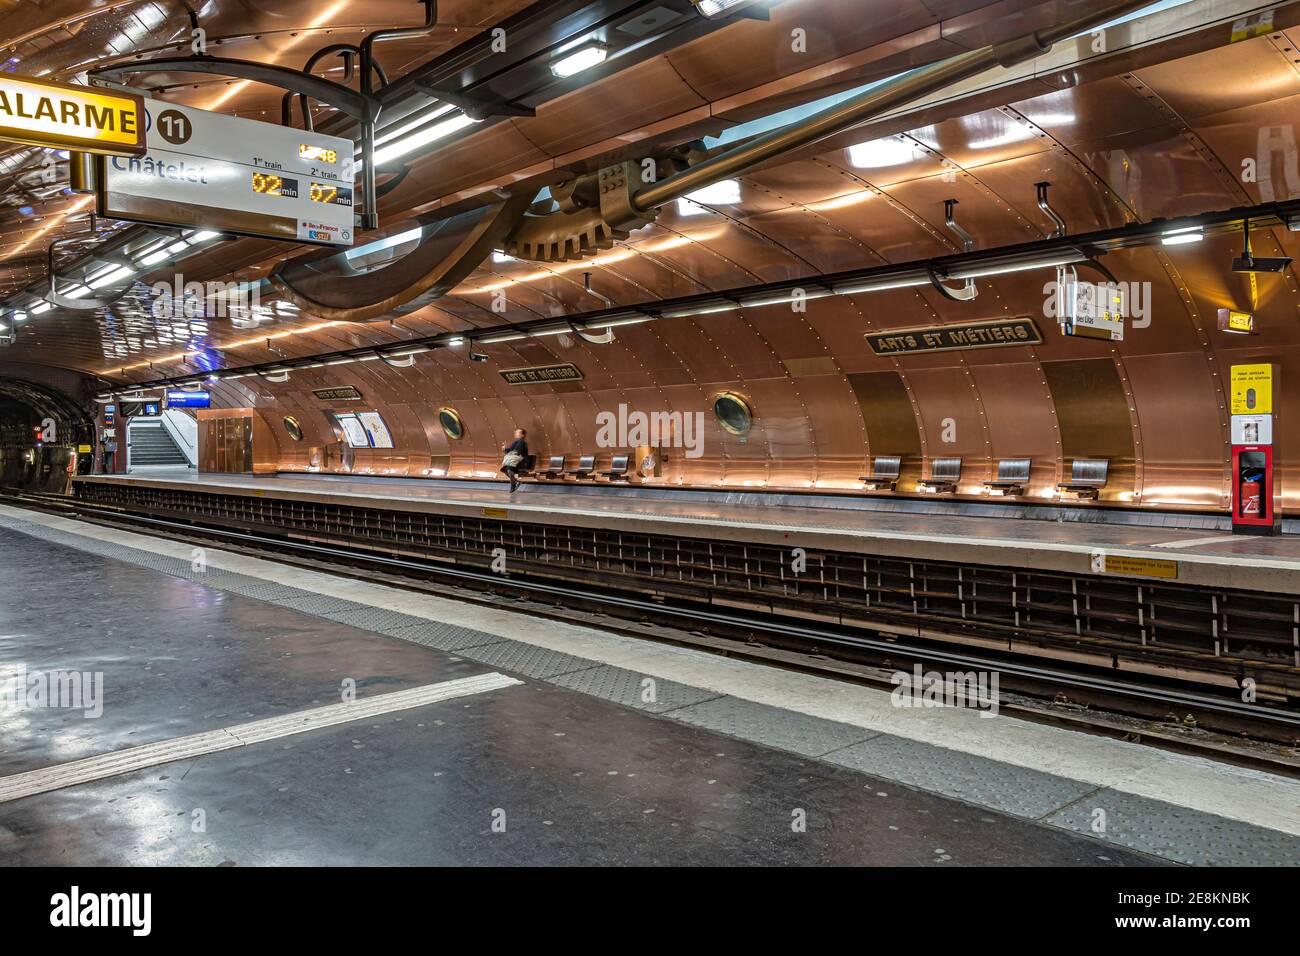 Station de métro Arts et métiers sur le réseau de métro de Paris. La plate-forme de la ligne 11 a les murs tapissés de cuivre et de hublots . Paris, France Banque D'Images